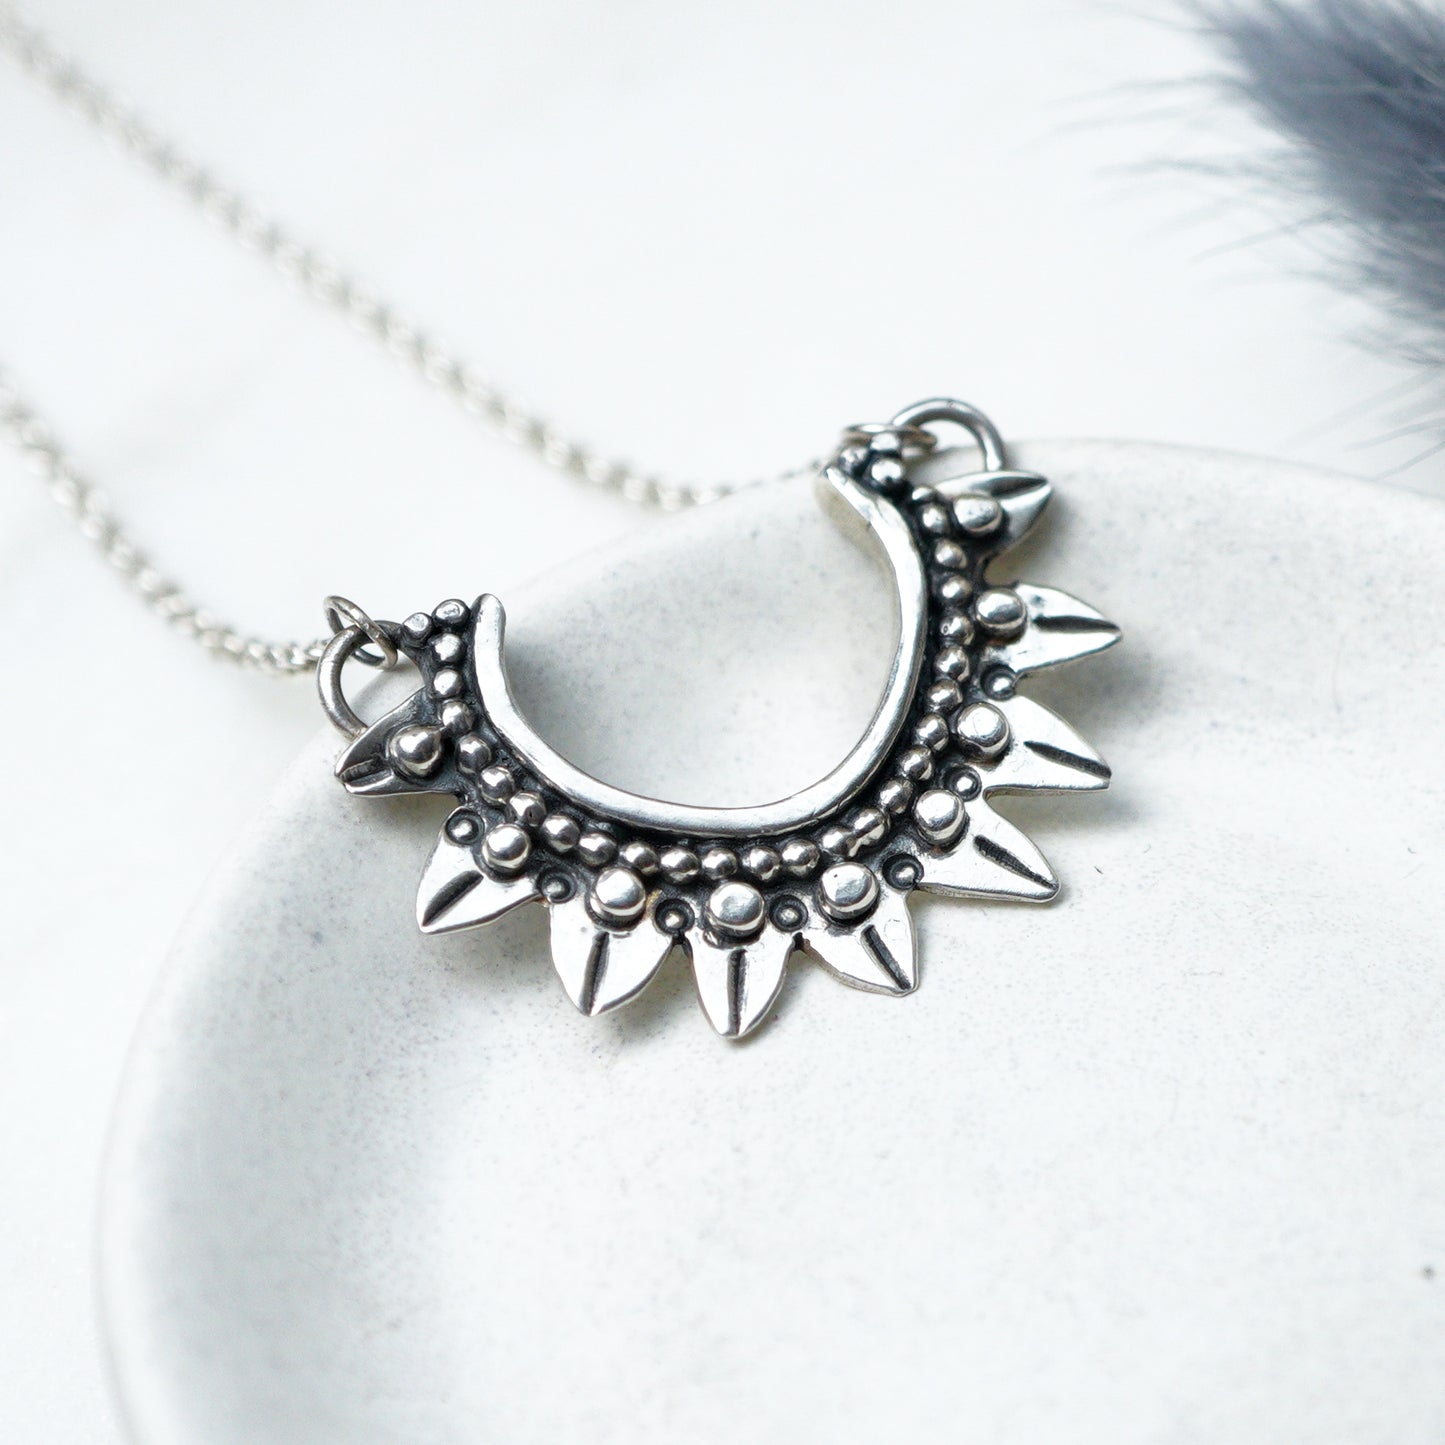 Oxidised Boho Silver Necklace